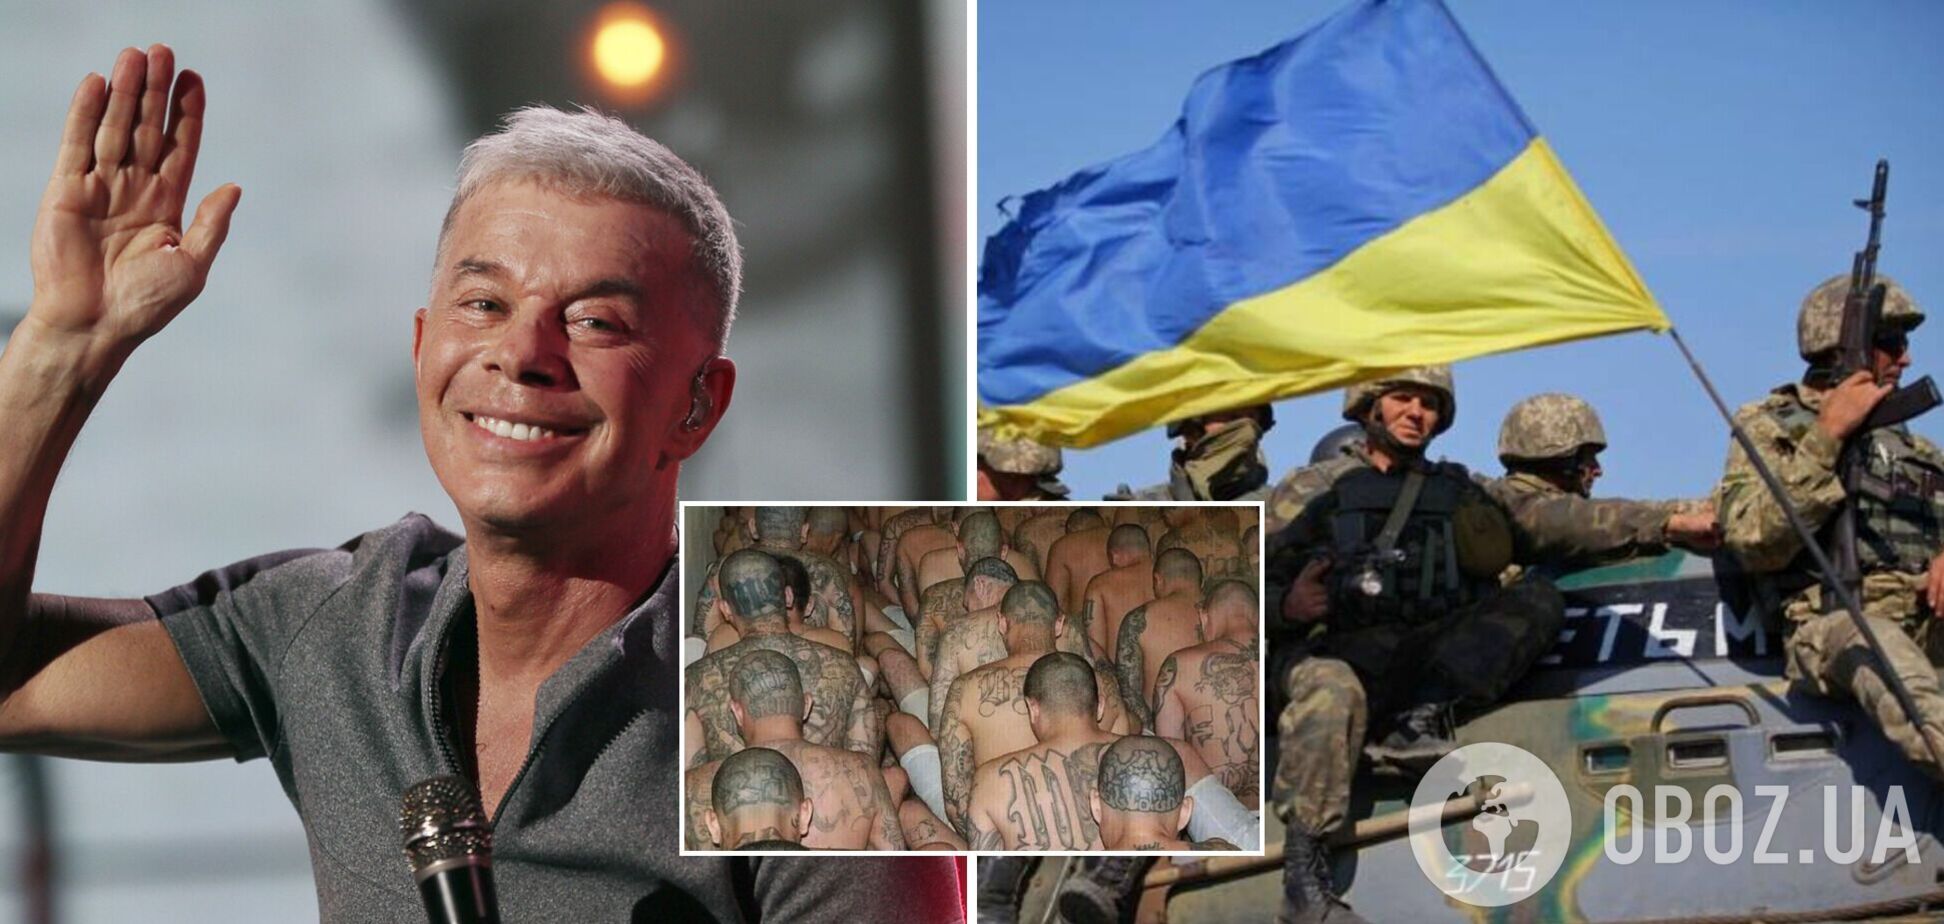 Олег Газманов хотів підставити українських військових, але зганьбився фото банди із Сальвадора